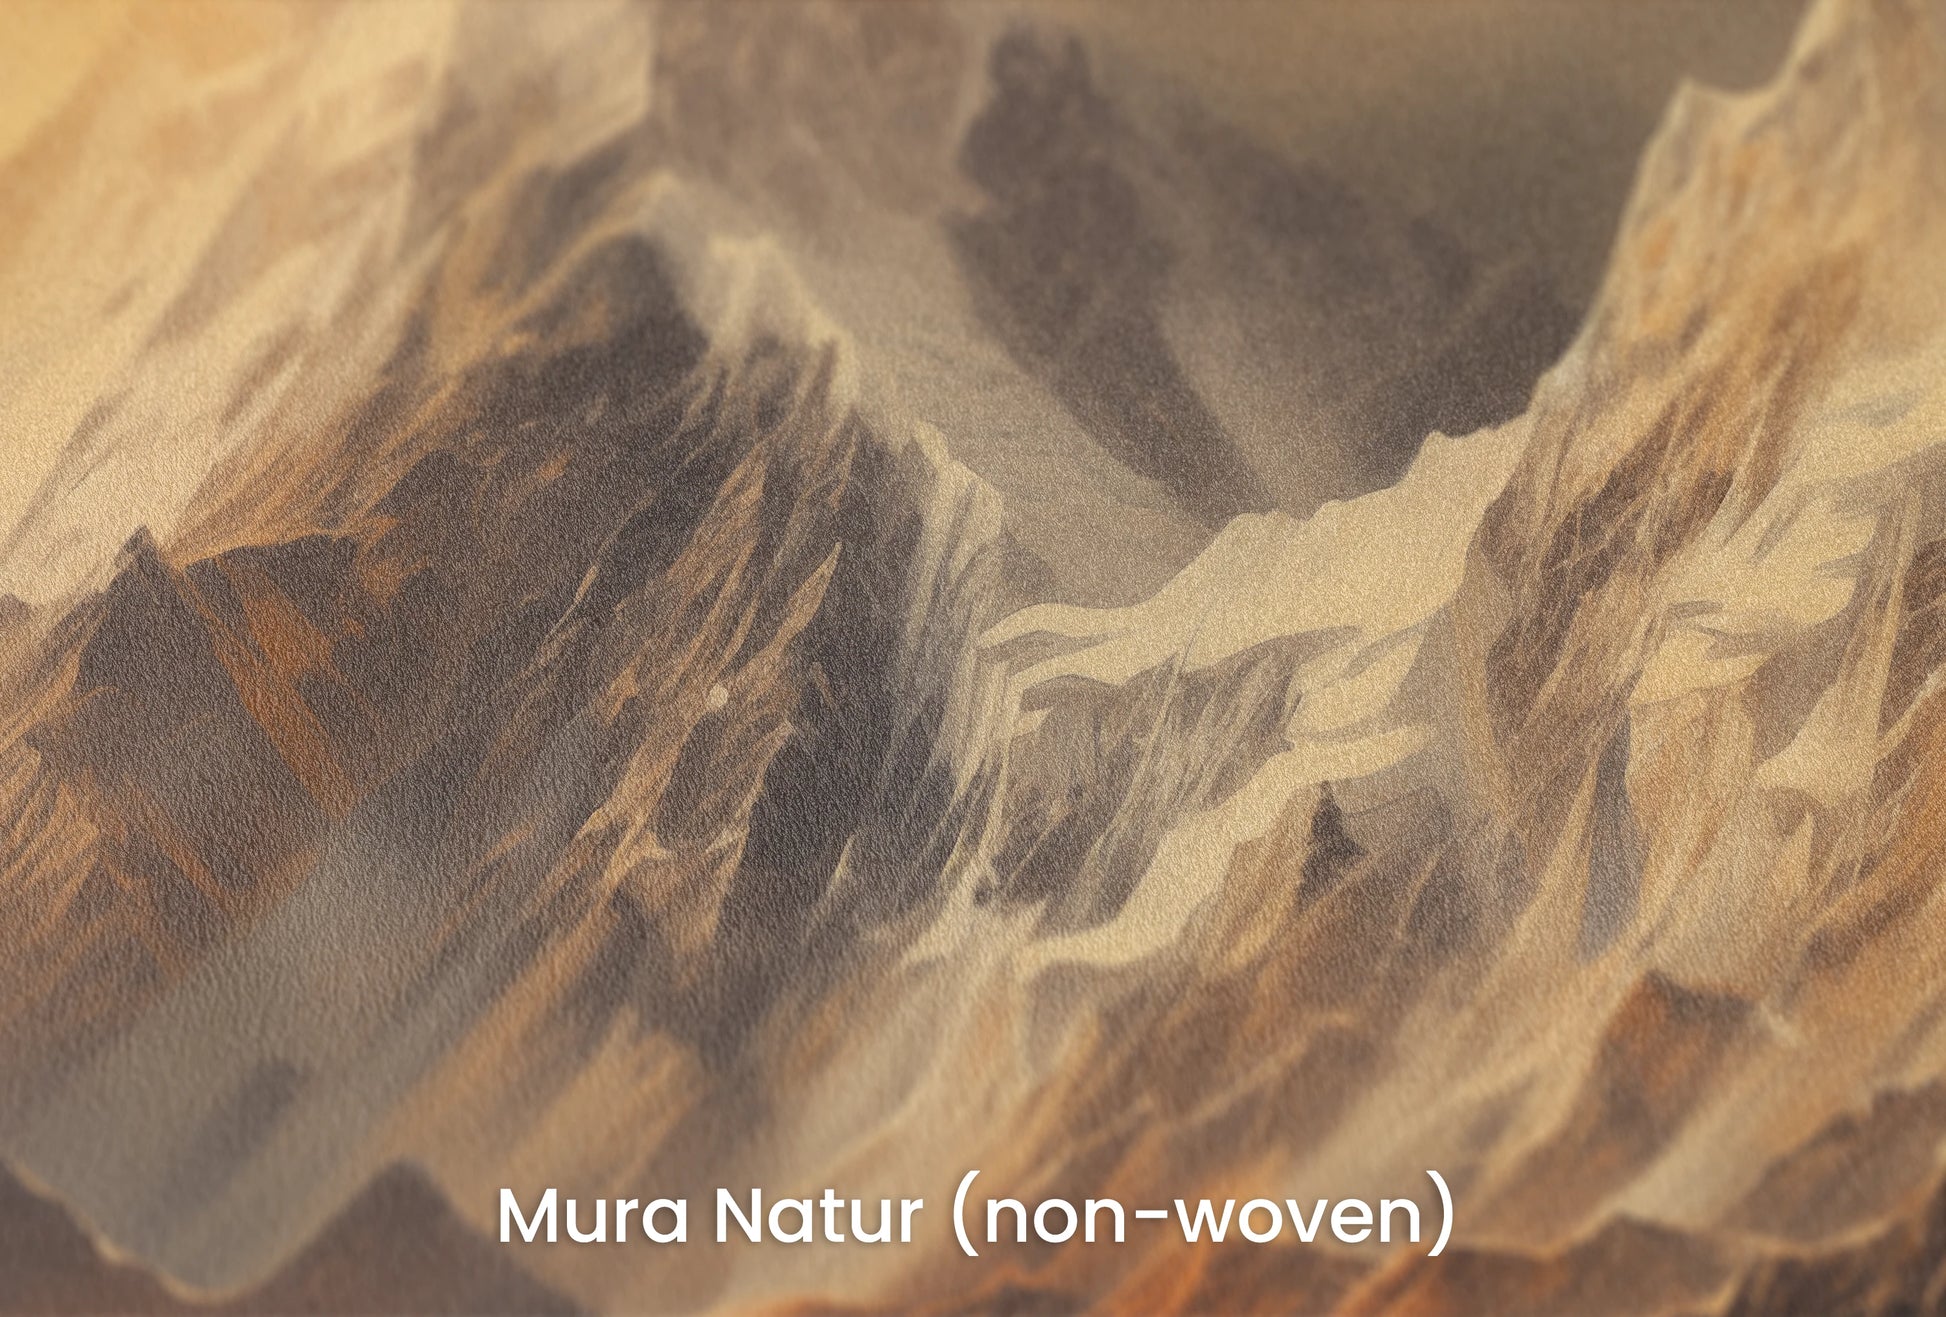 Zbliżenie na artystyczną fototapetę o nazwie Golden Mountain Glow na podłożu Mura Natur (non-woven) - naturalne i ekologiczne podłoże.